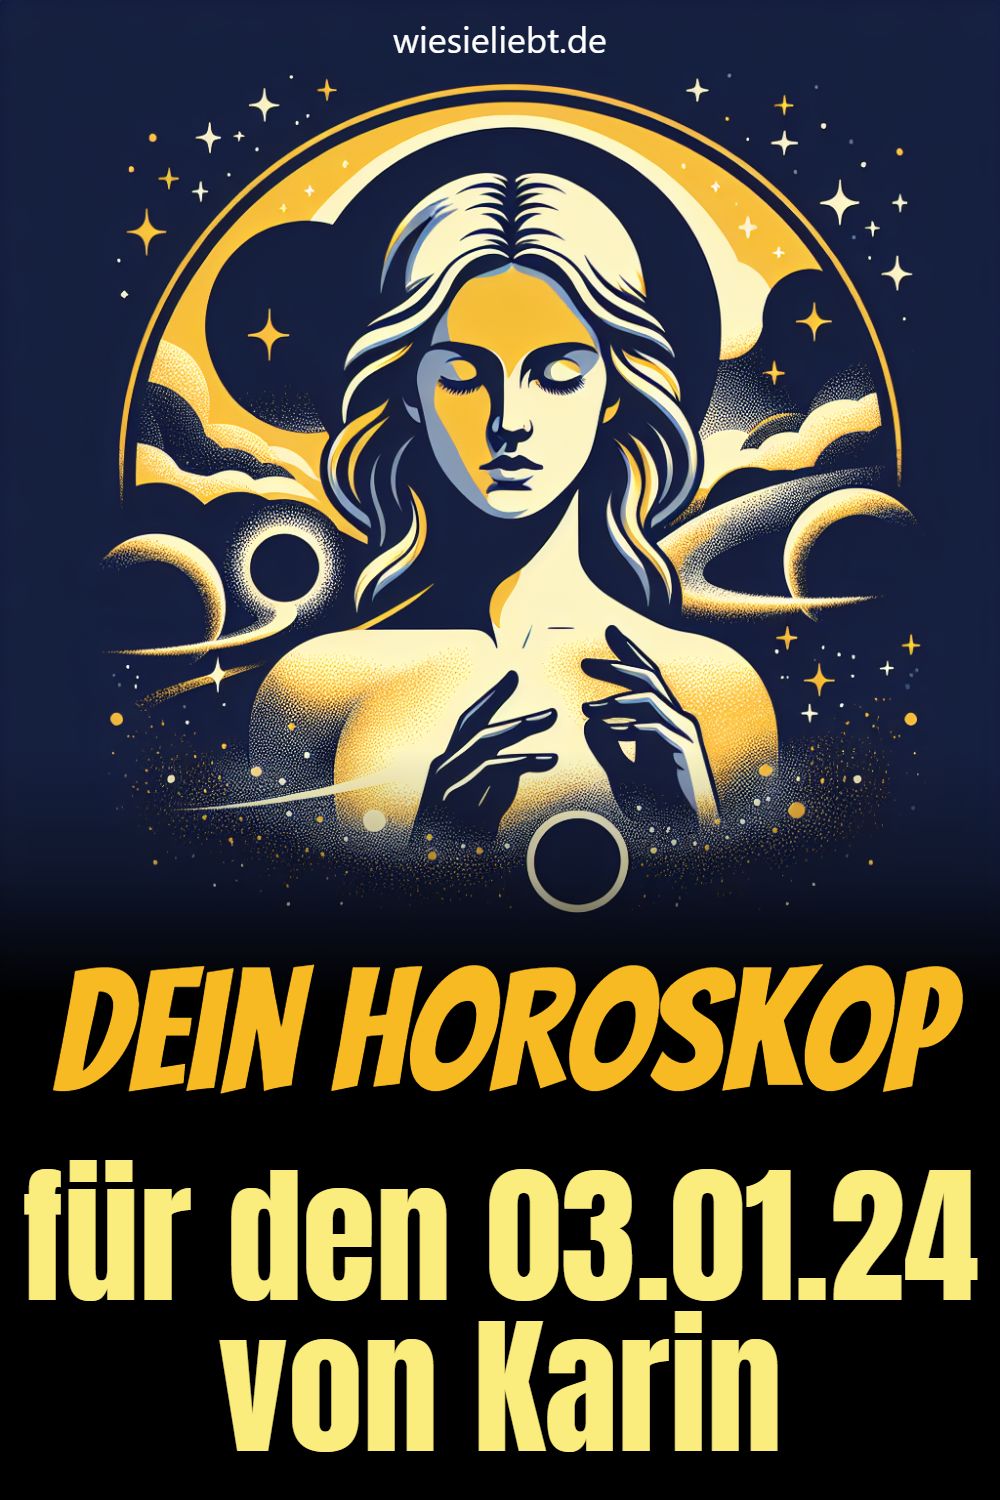 Dein Horoskop für den 03.01.24 von Karin